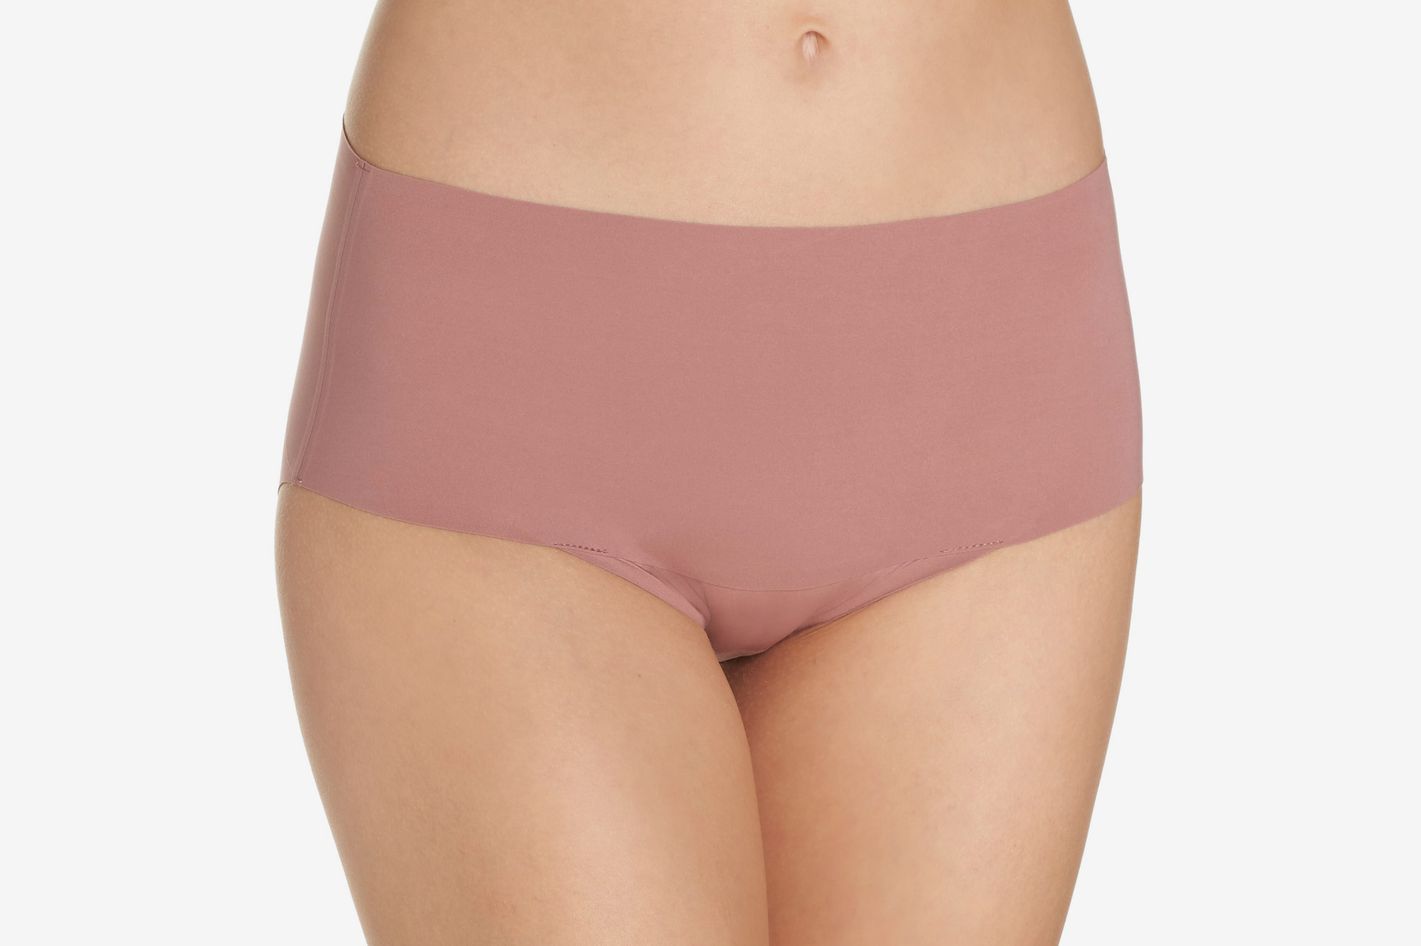 Best Seamless Underwear to Avoid VPL 2021